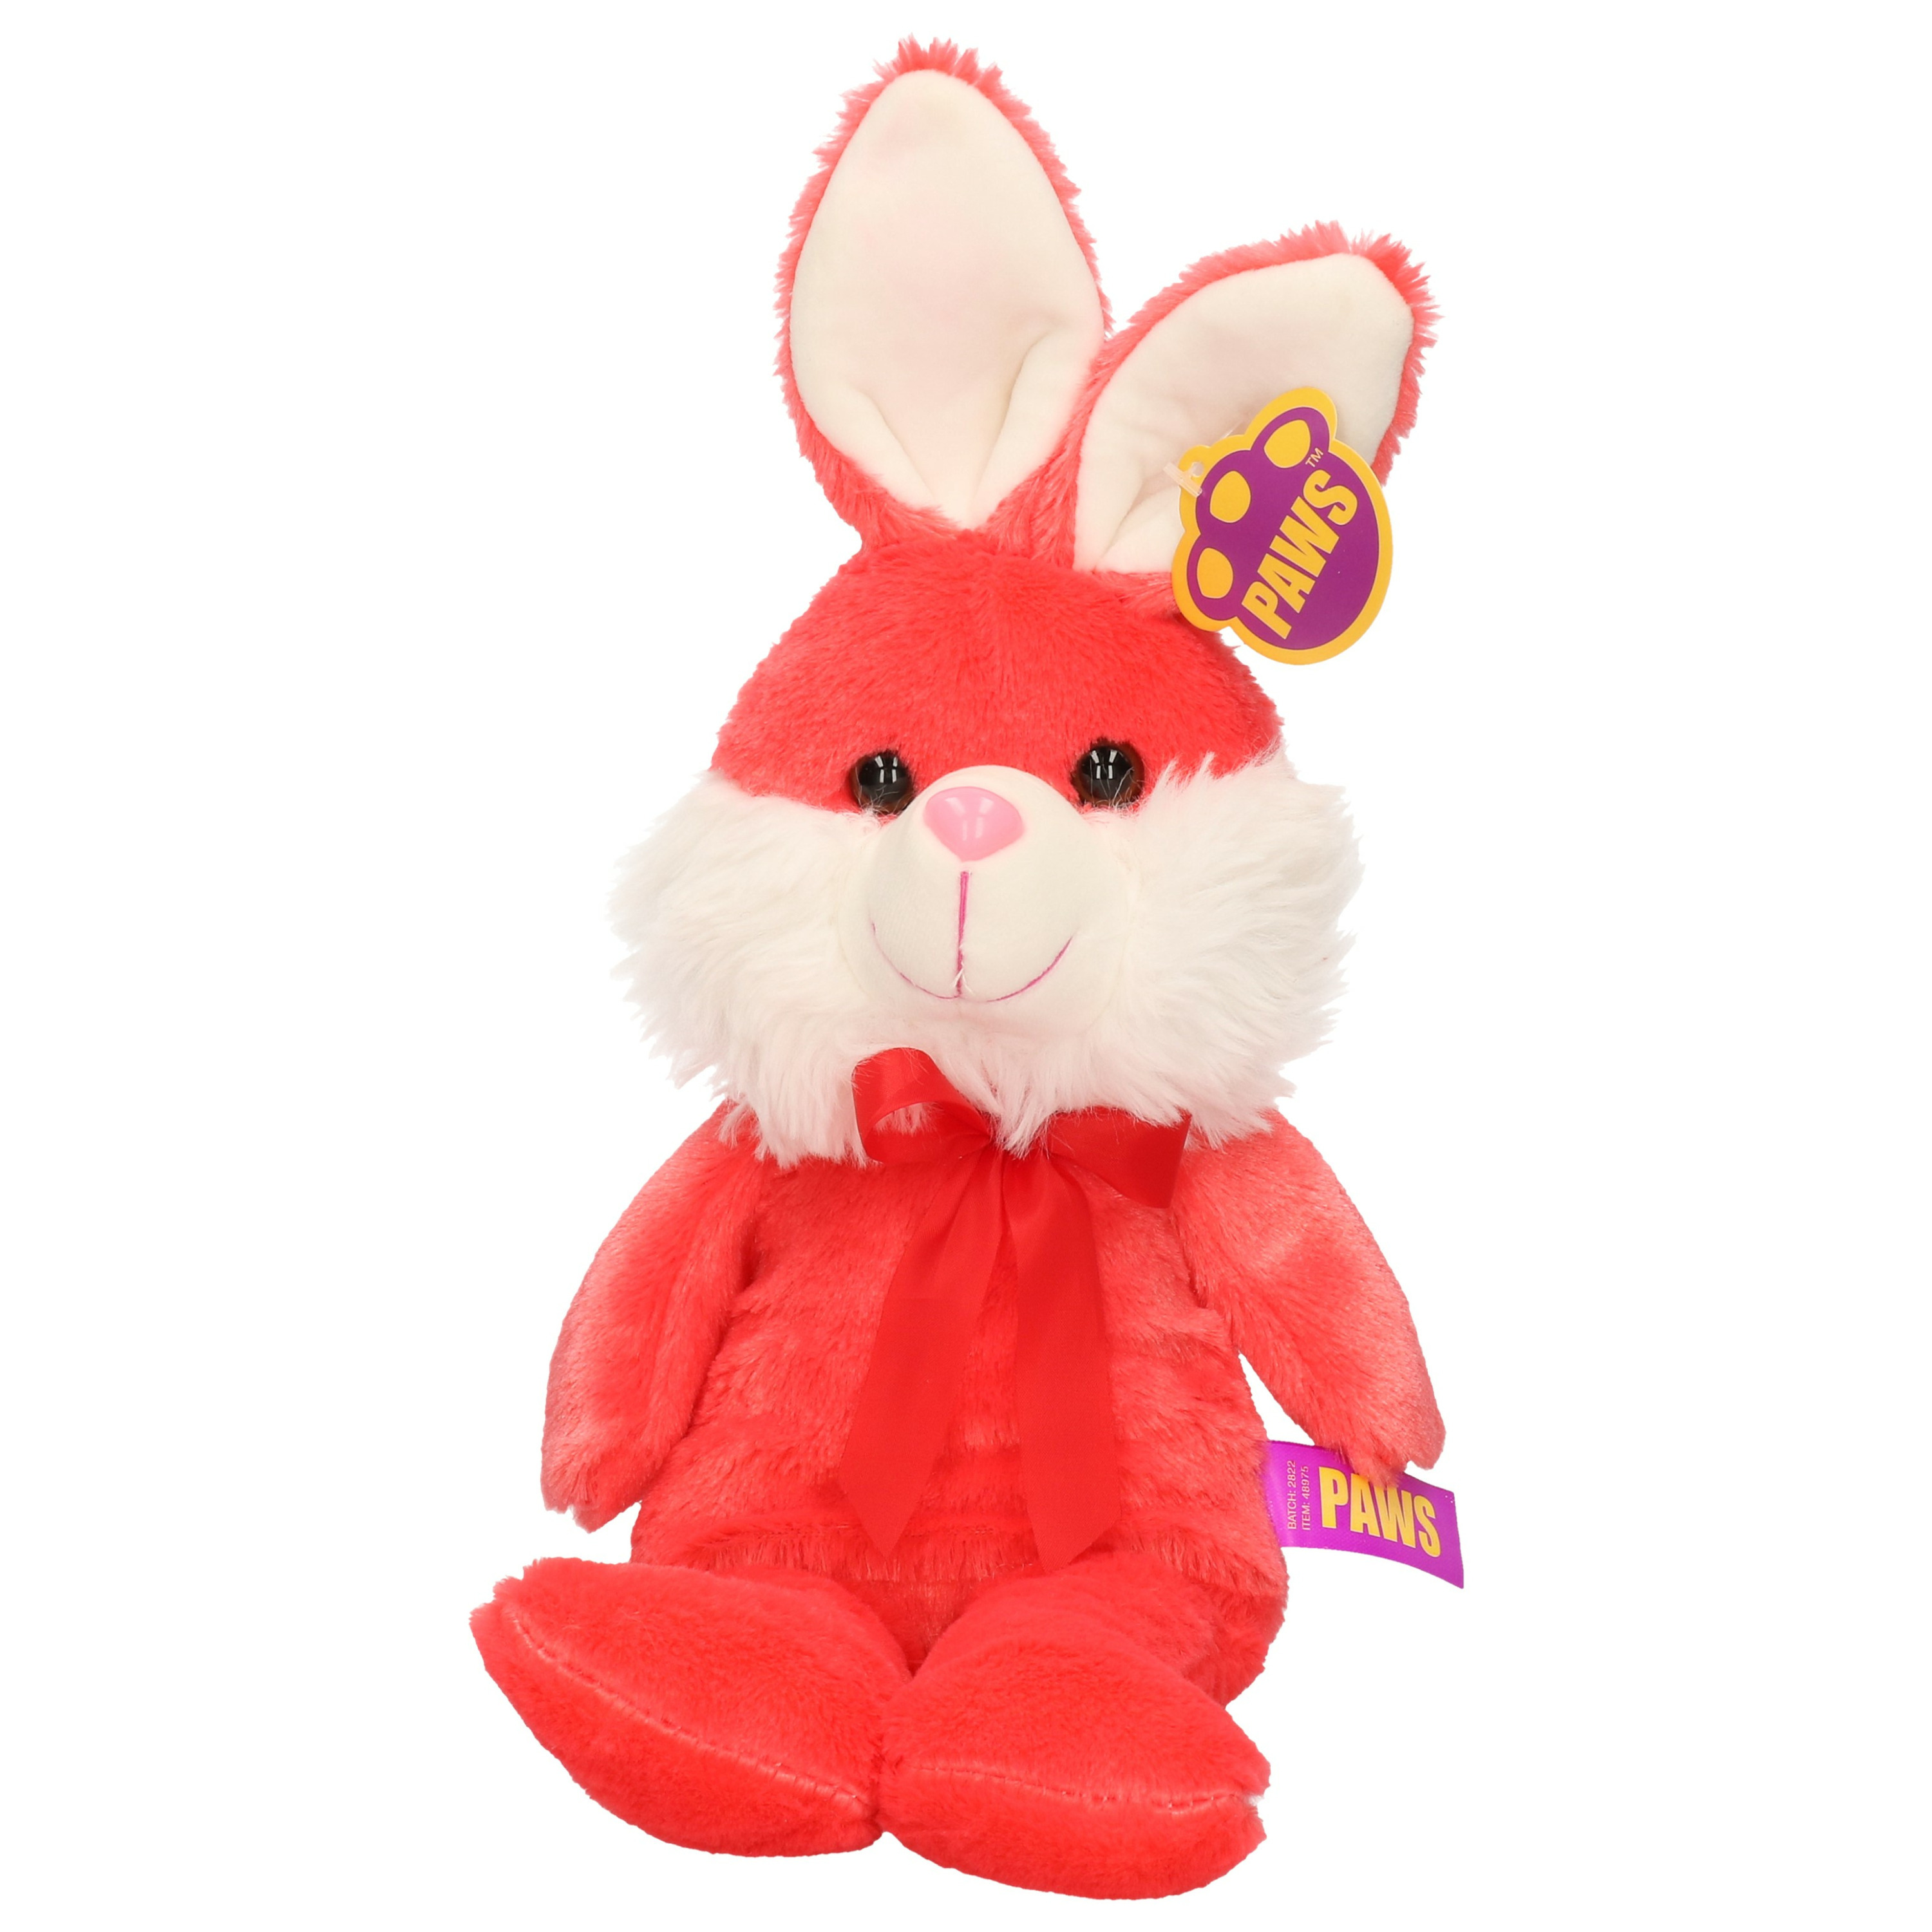 Paashaas/haas/konijn knuffel dier - zachte pluche - rood - cadeau - 32 cm - met strikje -